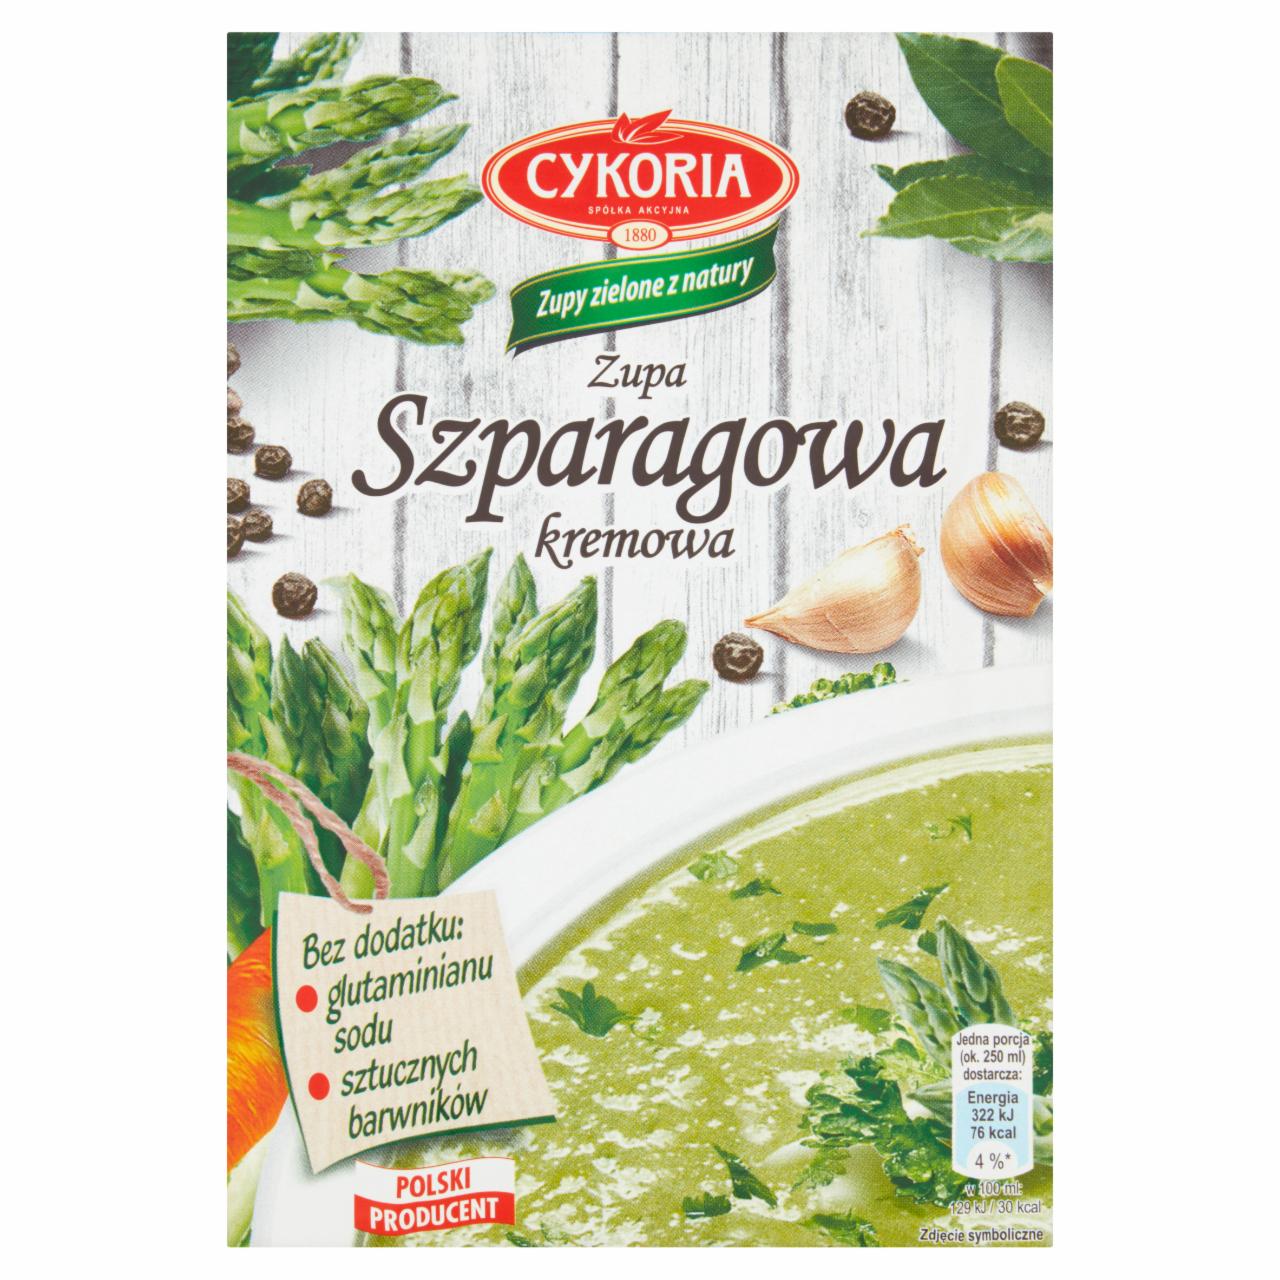 Zdjęcia - Cykoria Zupa szparagowa kremowa 50 g